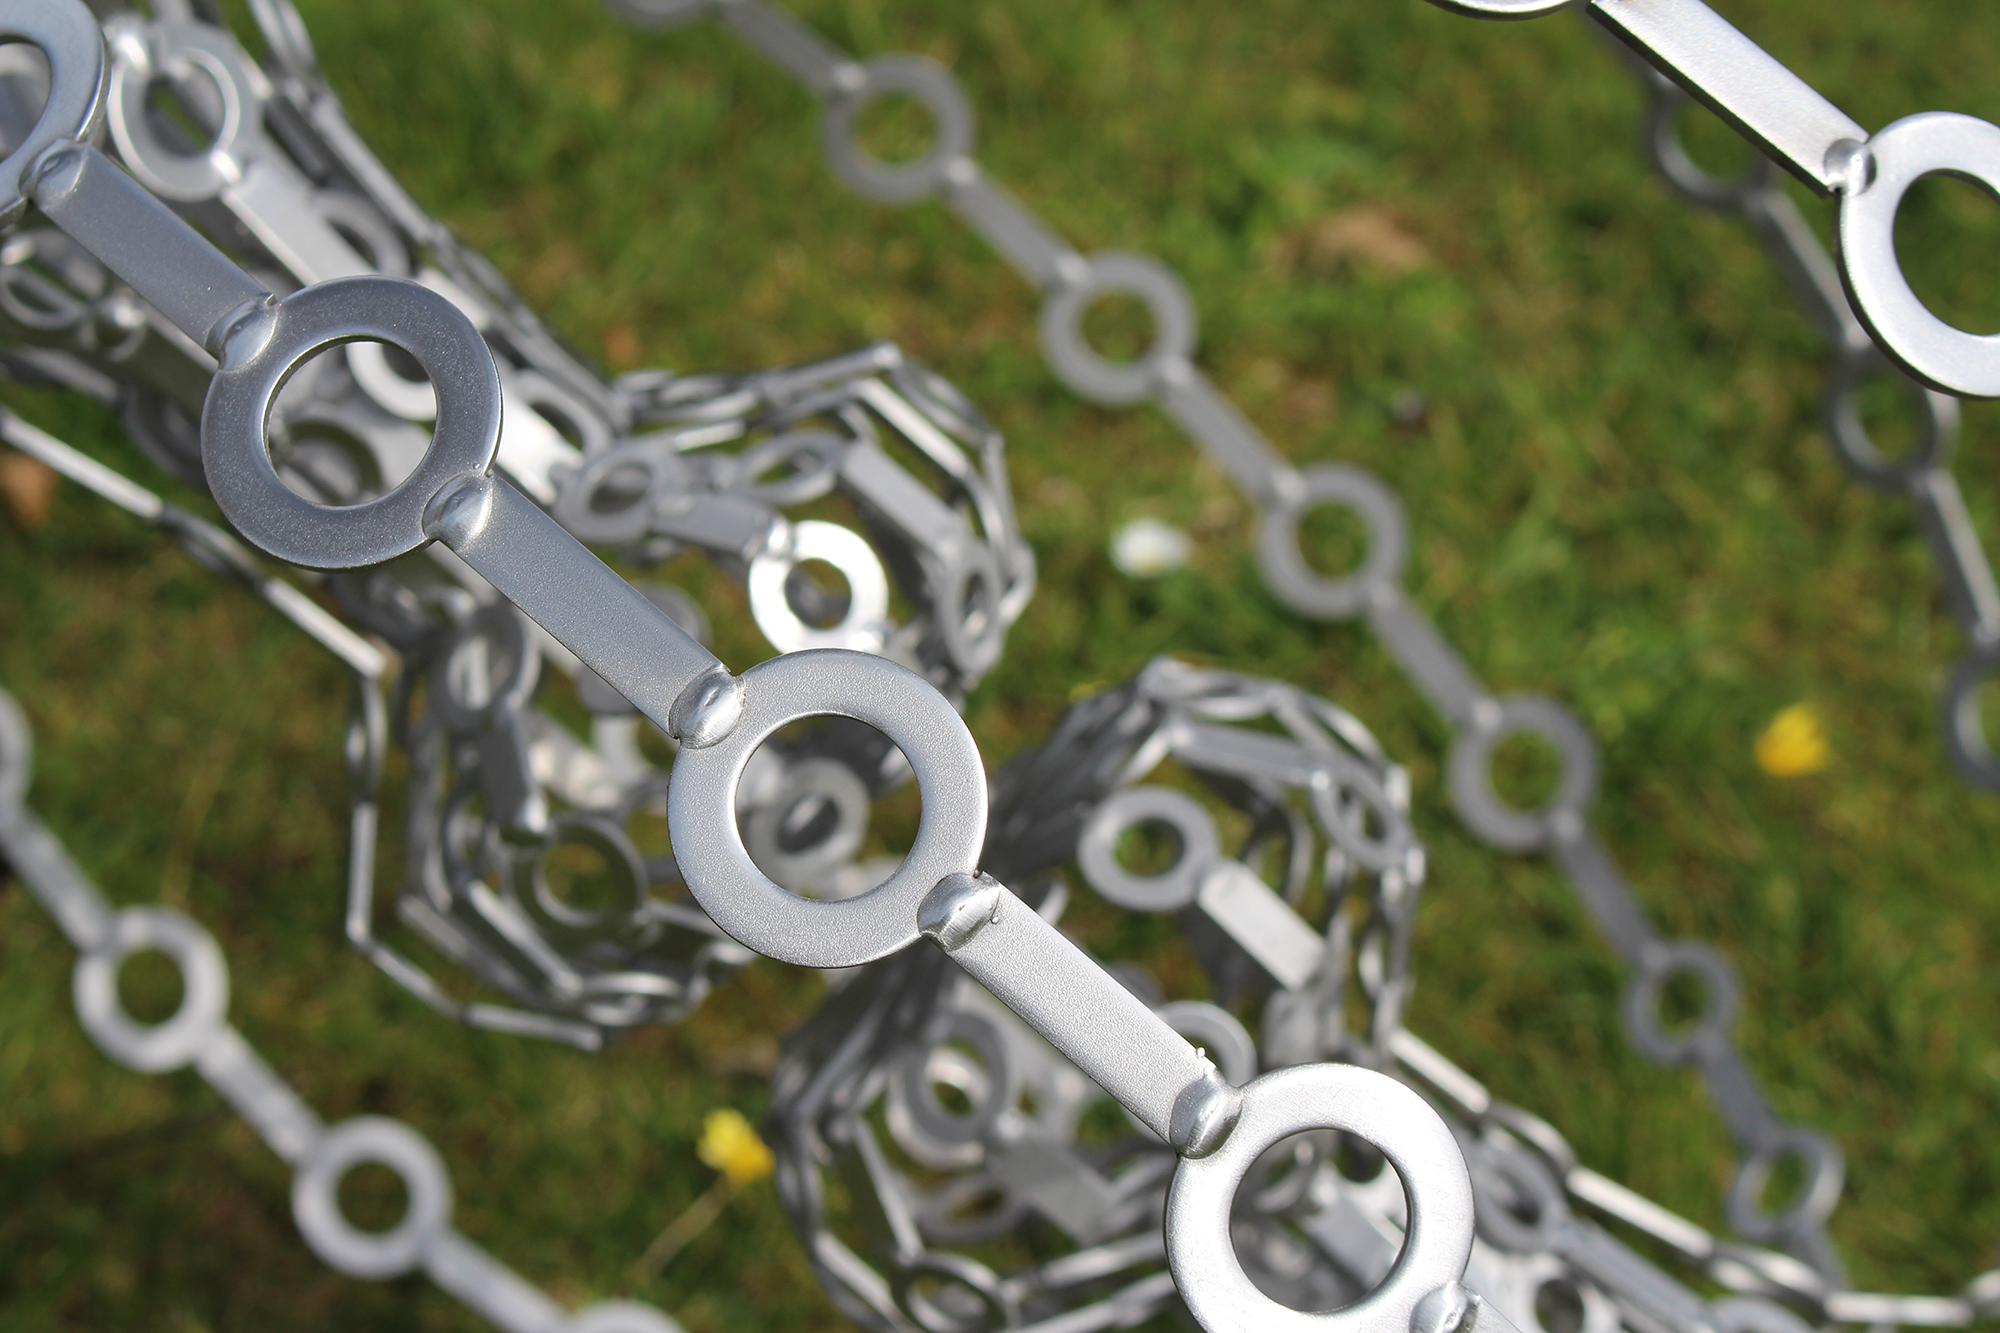 Stainless steel metal abstract garden sculpture - Potentials 2016